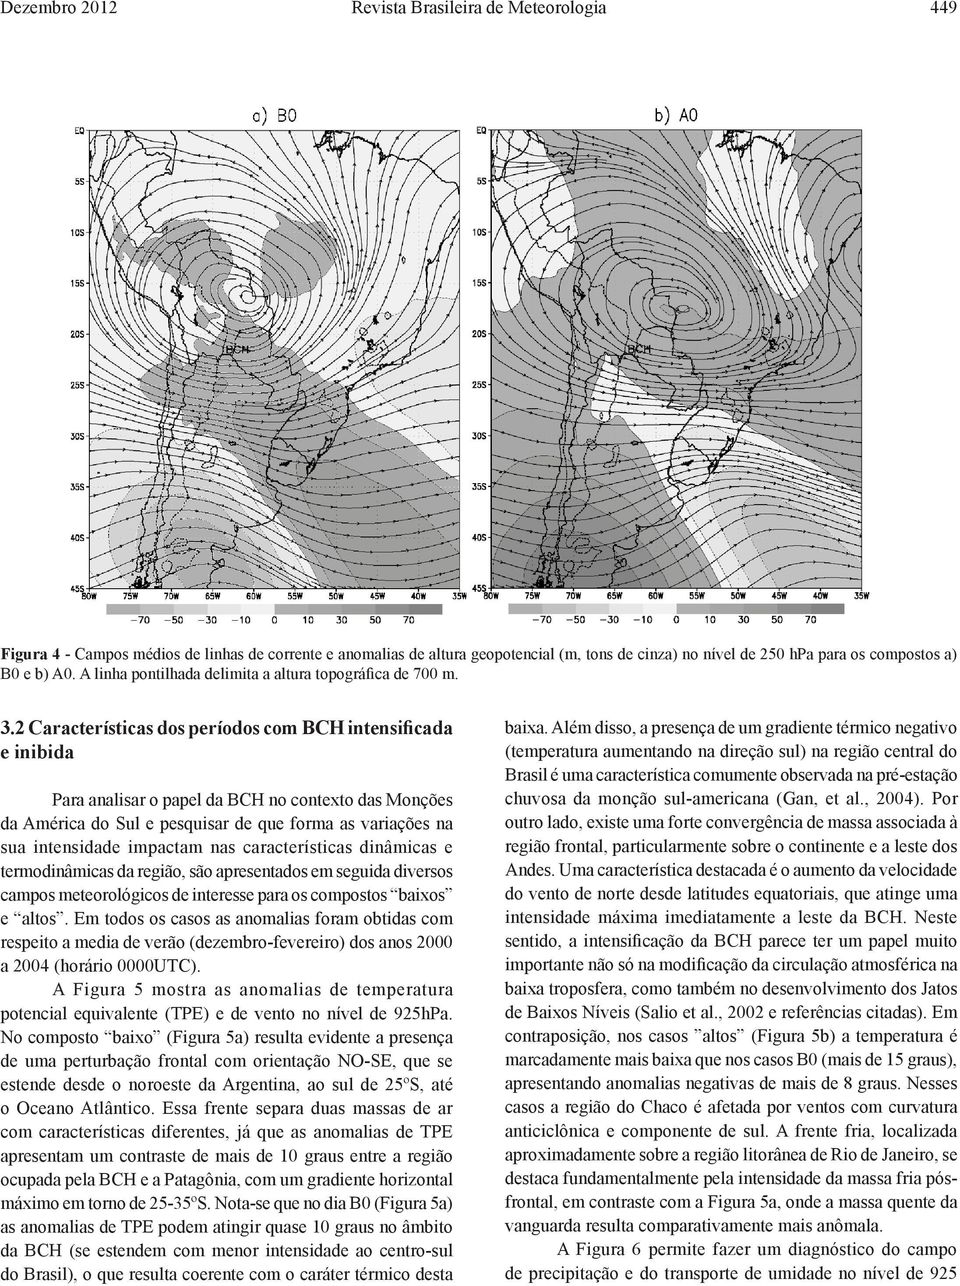 2 Características dos períodos com BCH intensificada e inibida Para analisar o papel da BCH no contexto das Monções da América do Sul e pesquisar de que forma as variações na sua intensidade impactam